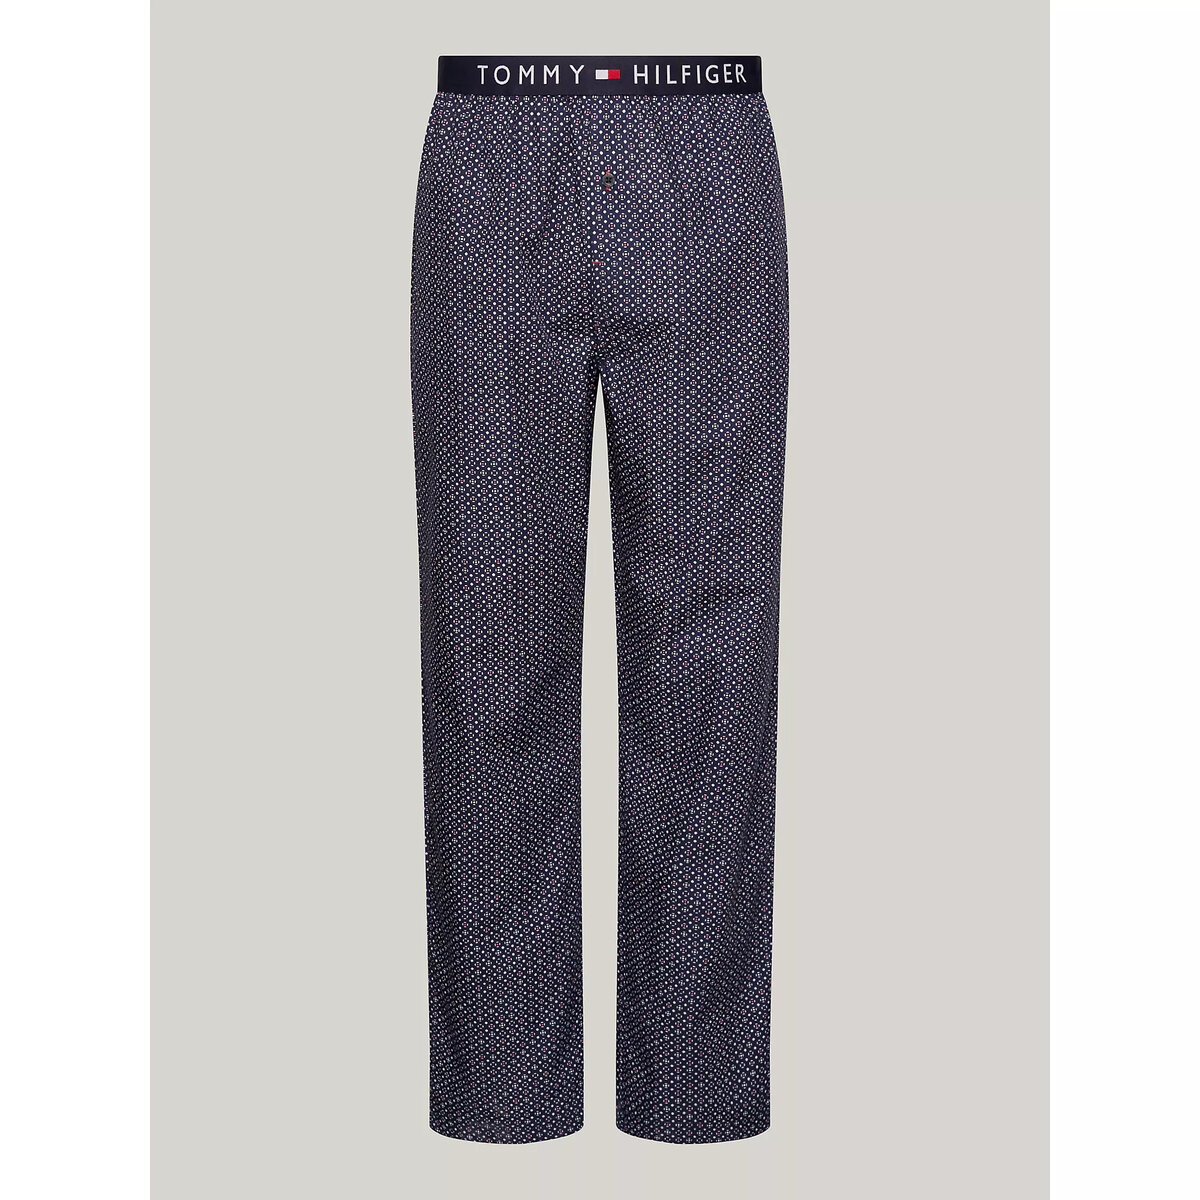 Modré pyžamové kalhoty s potiskem od Tommy Hilfiger, S i10_P68447_2:92_